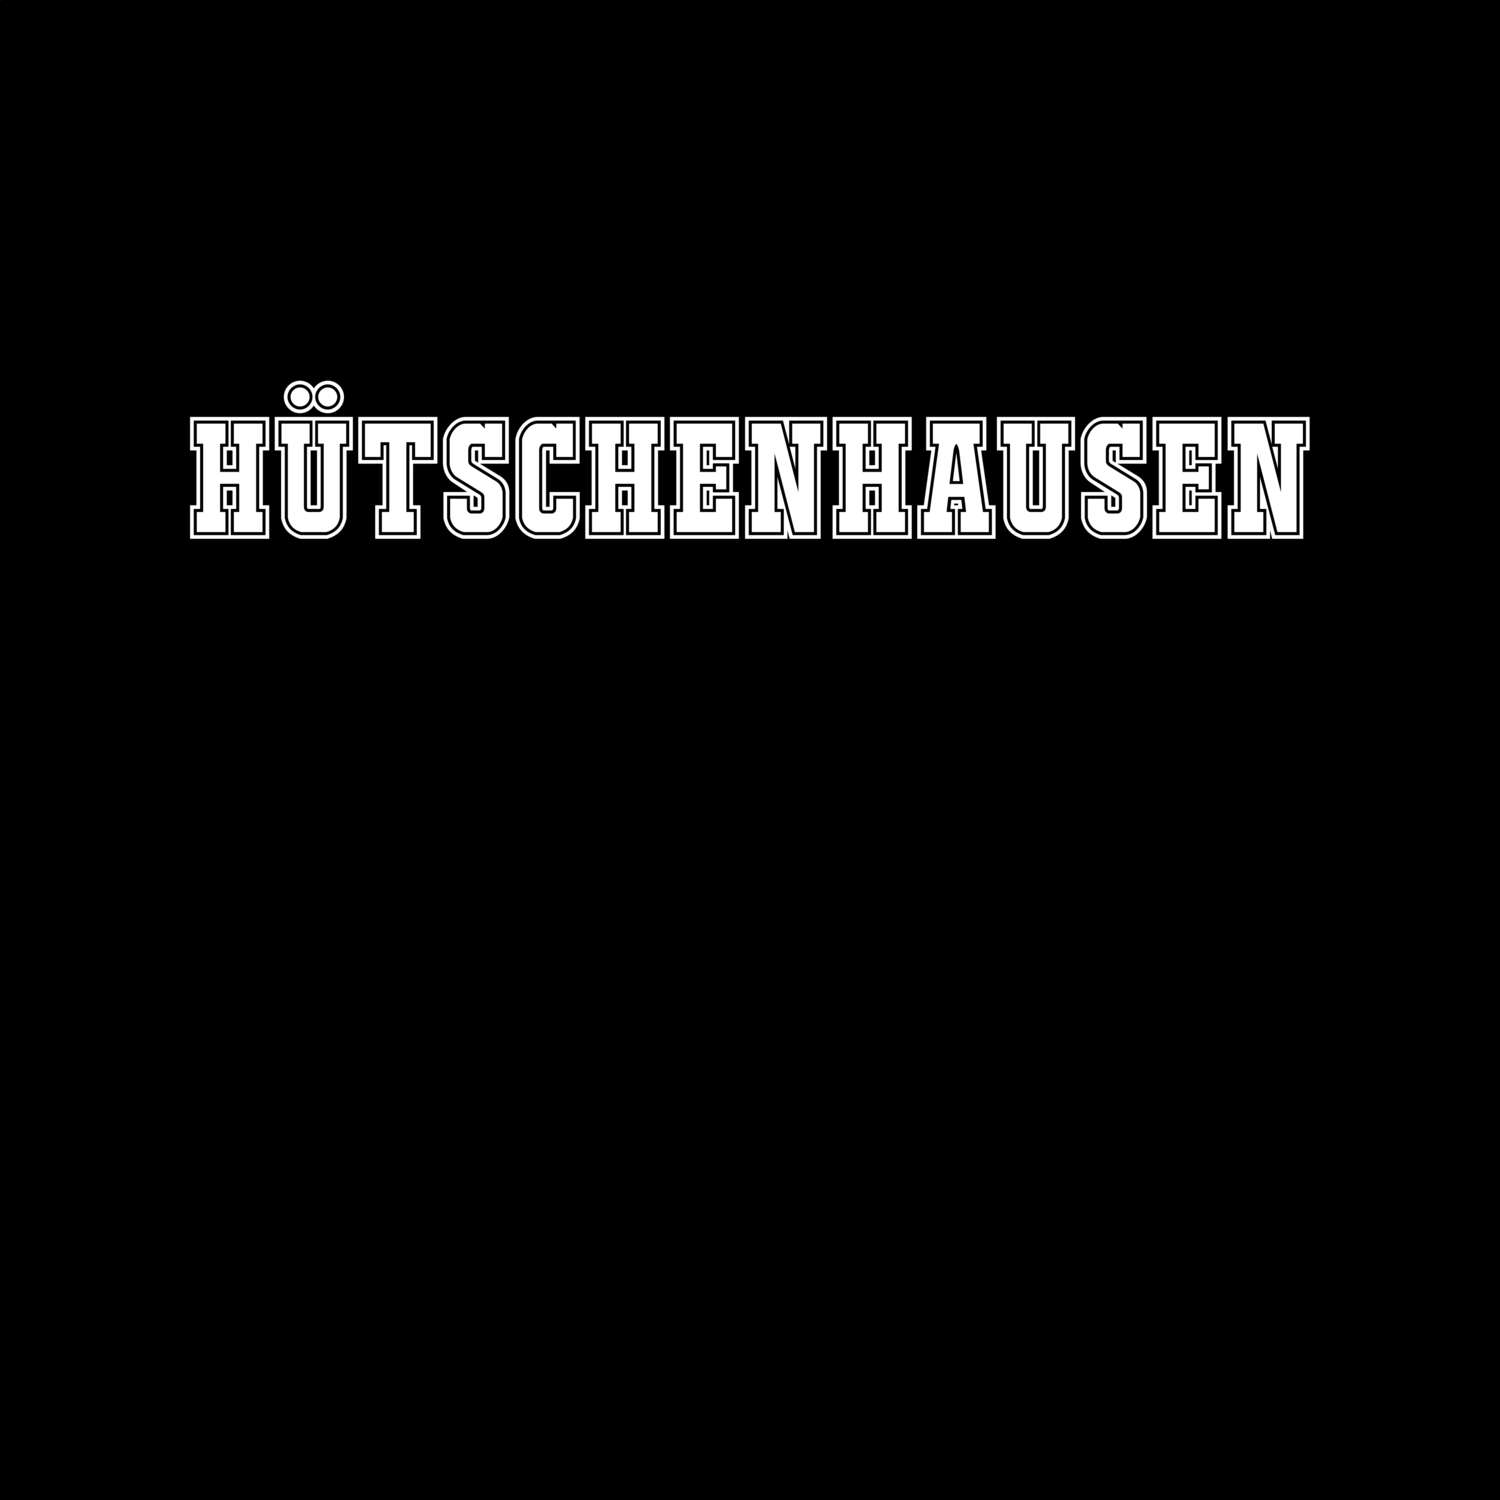 Hütschenhausen T-Shirt »Classic«